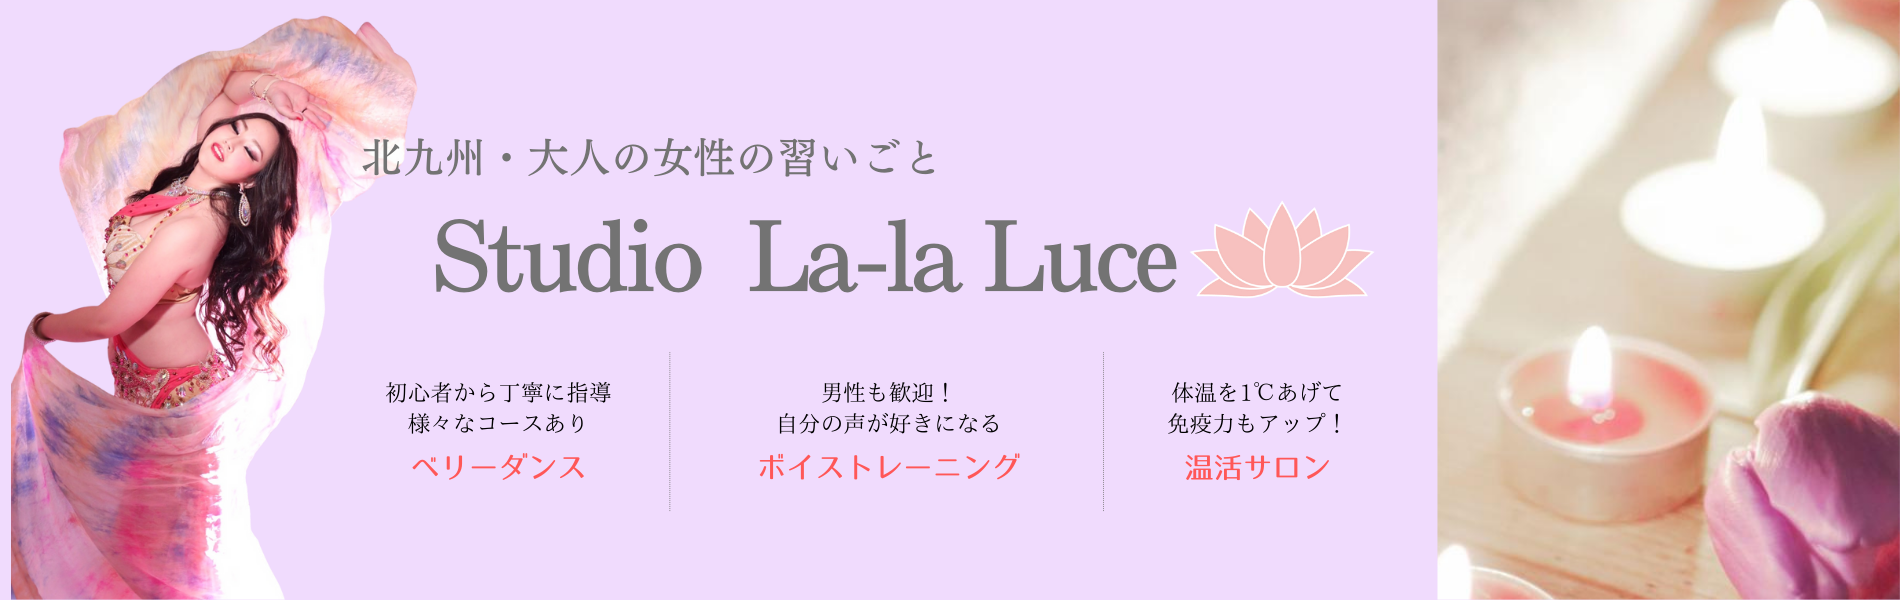 北九州・ベリーダンス教室 Studio La-la Luce